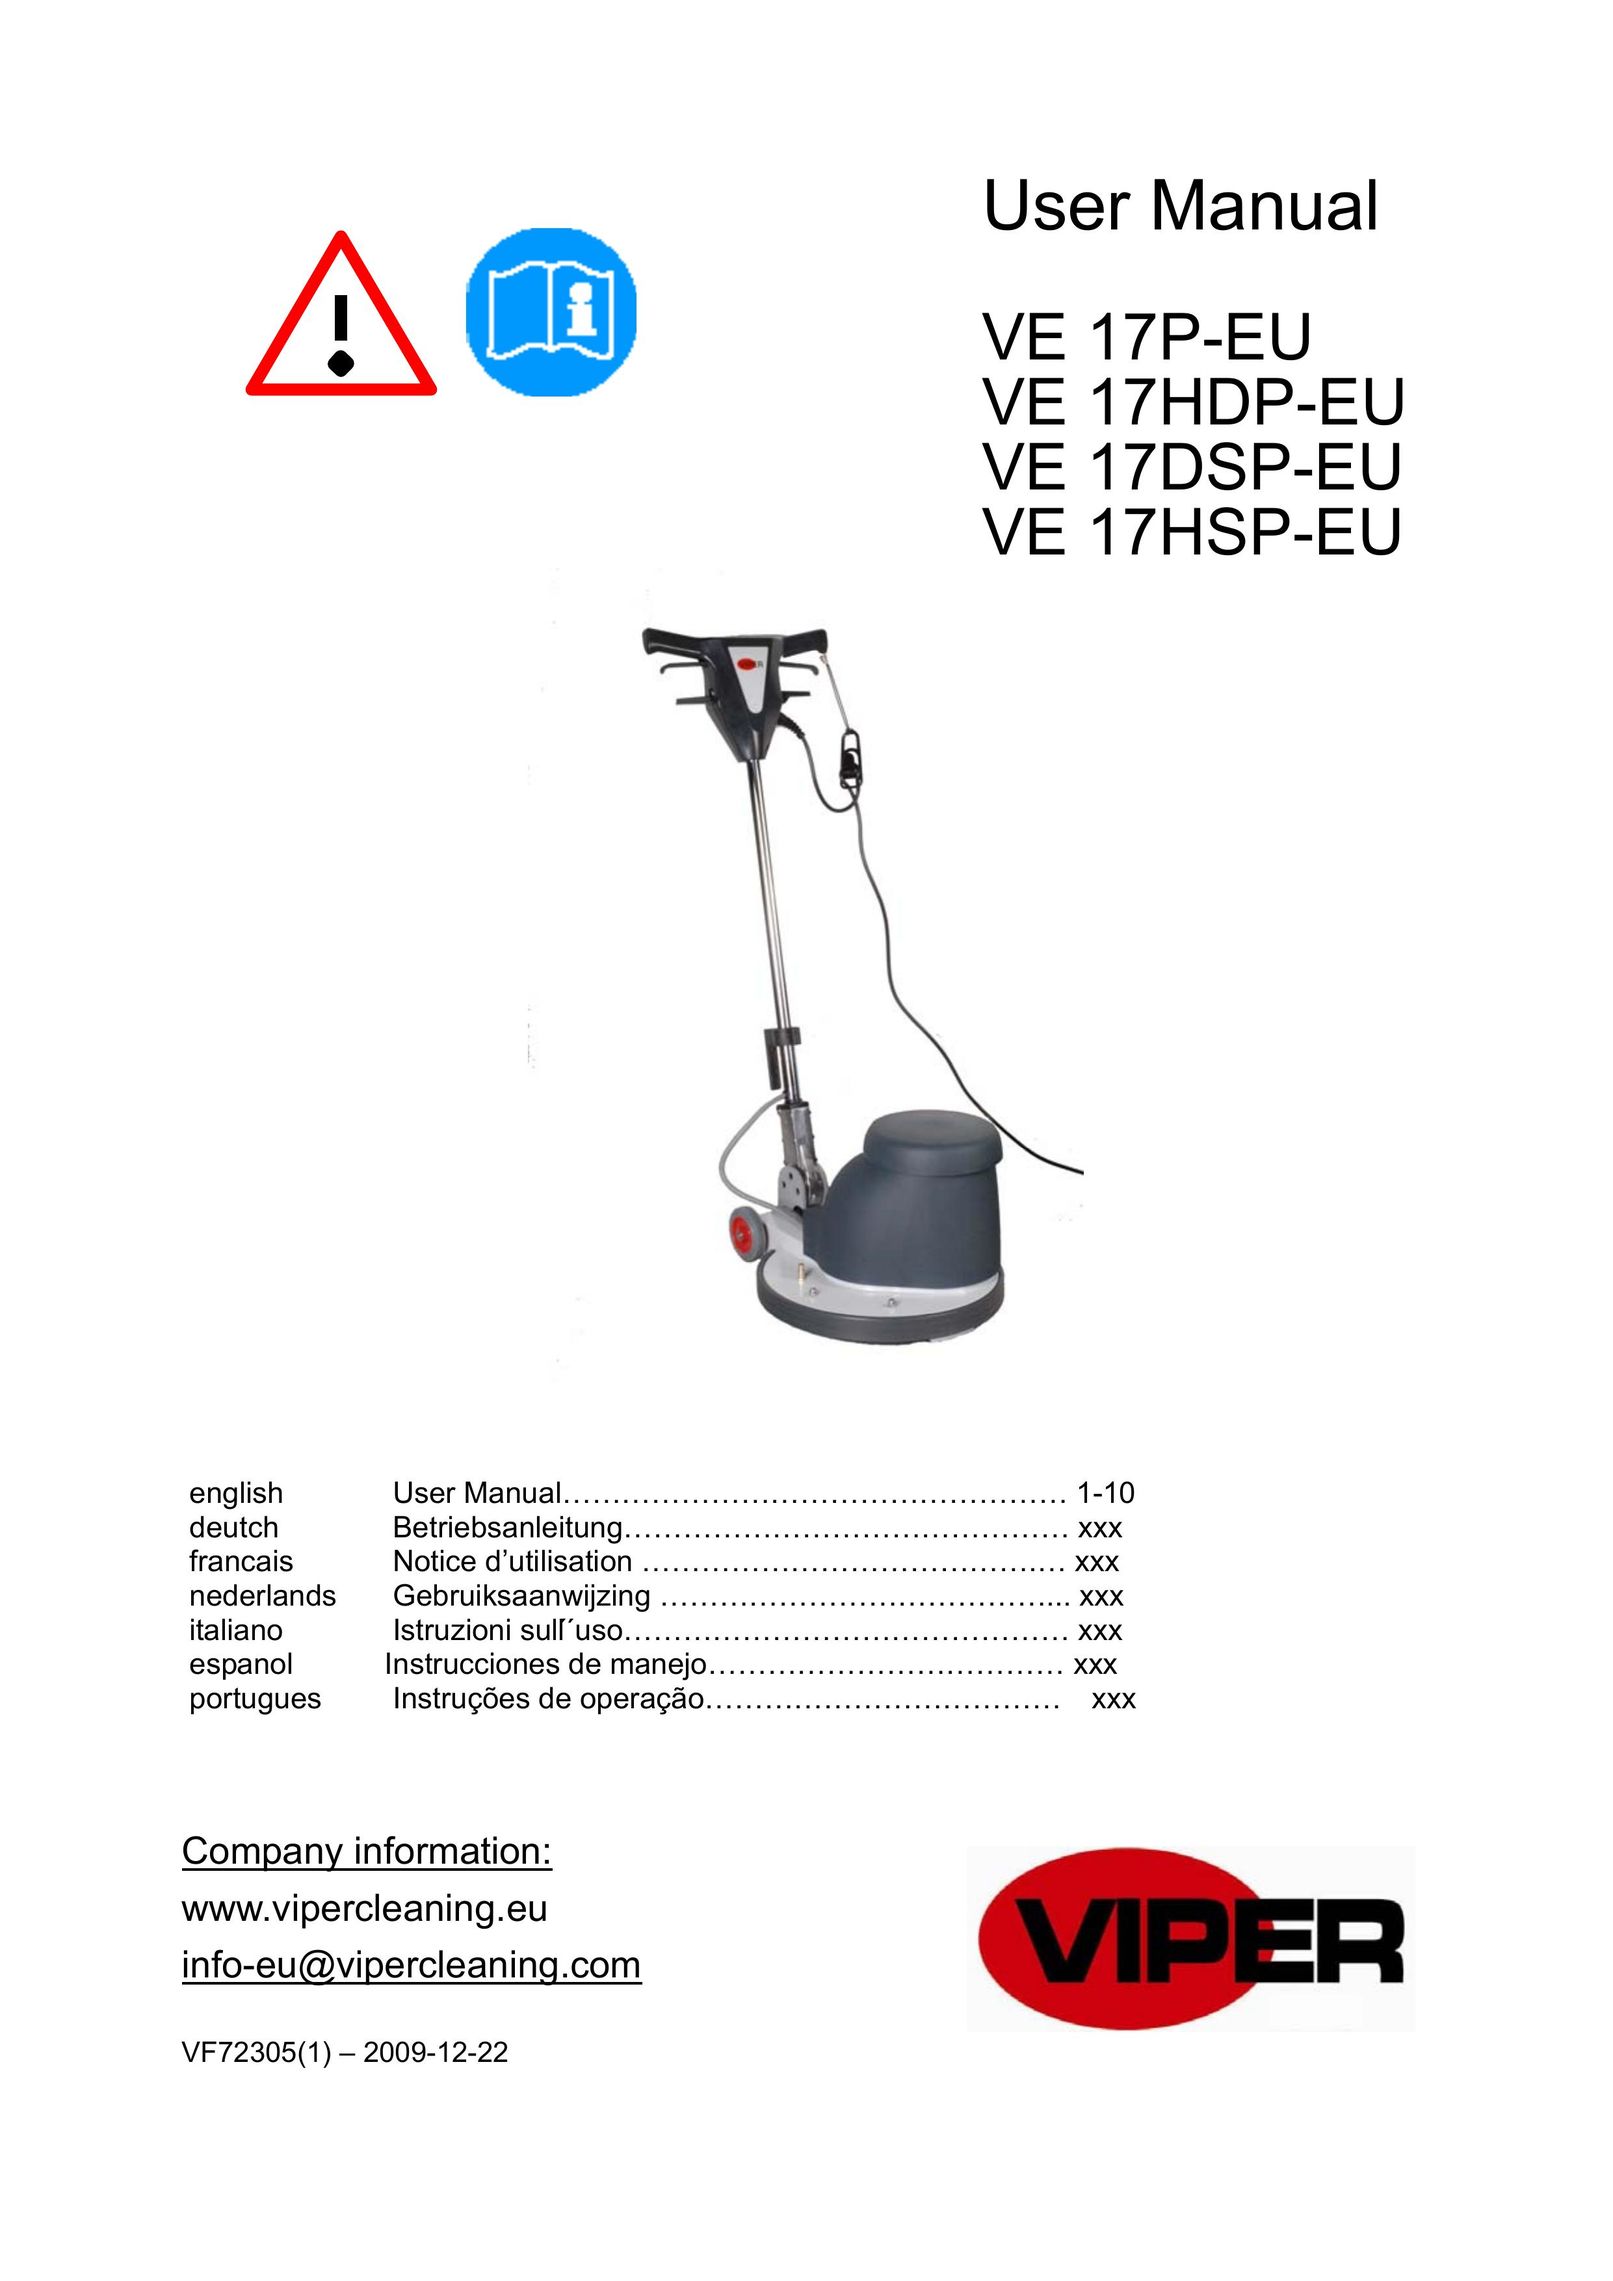 Viper VE 17DSP-EU Vacuum Cleaner User Manual